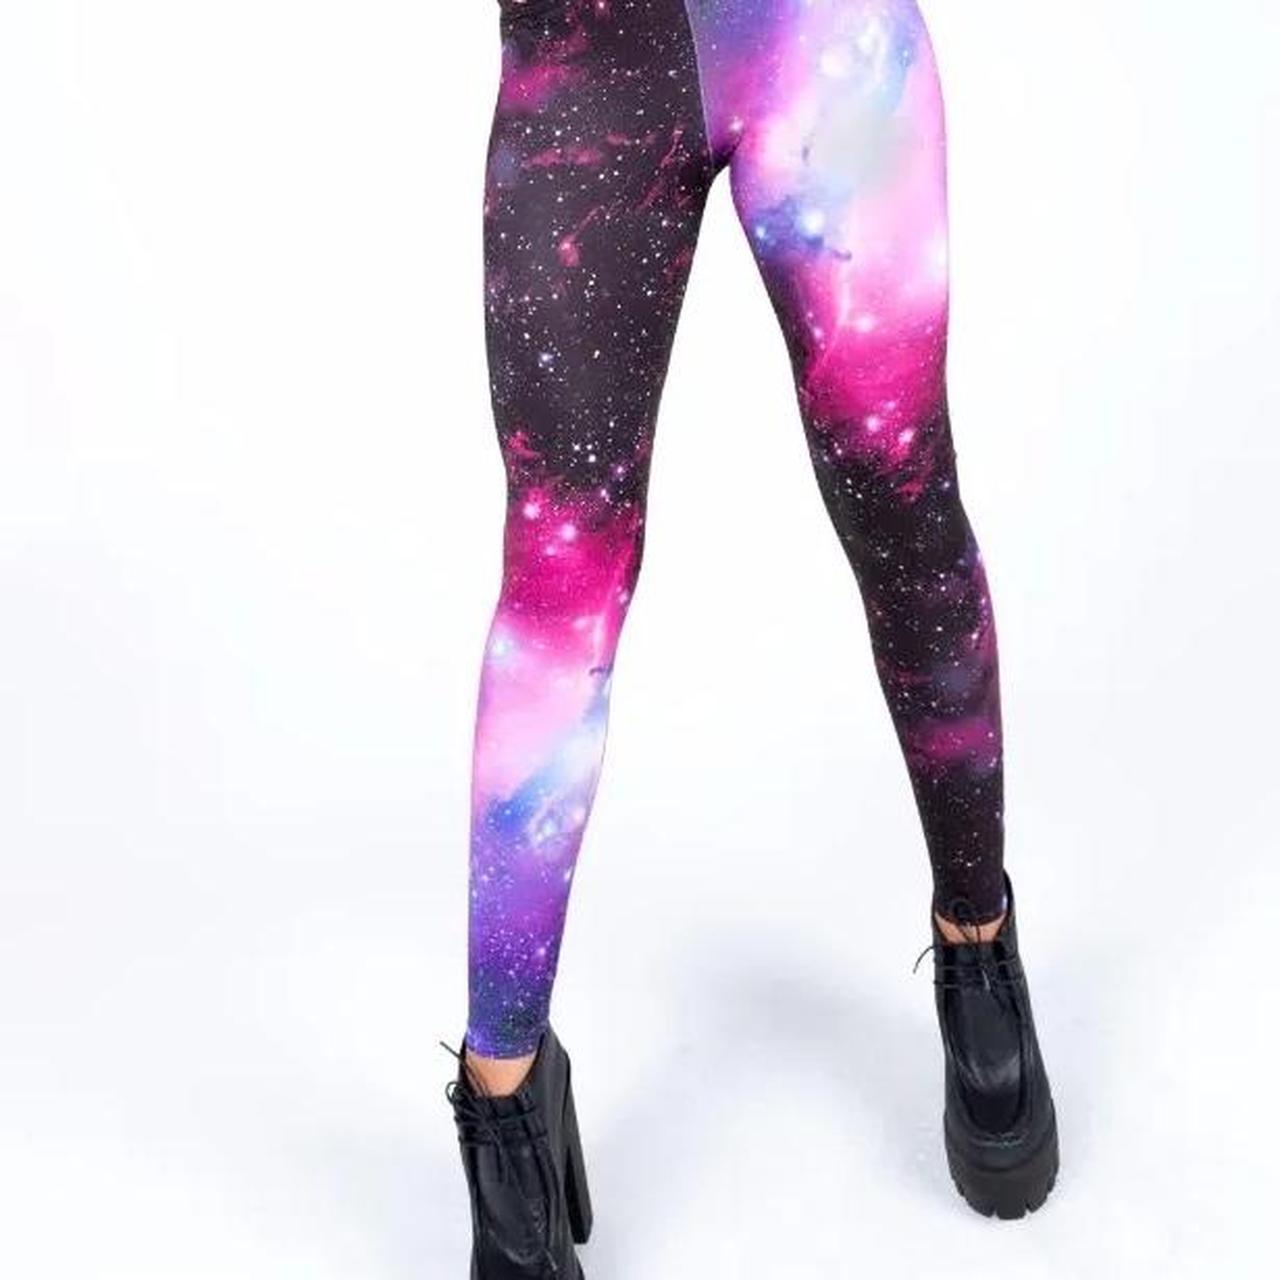 THE OG SPACE LEGGINGS! Blackmilk Clothing Galaxy - Depop